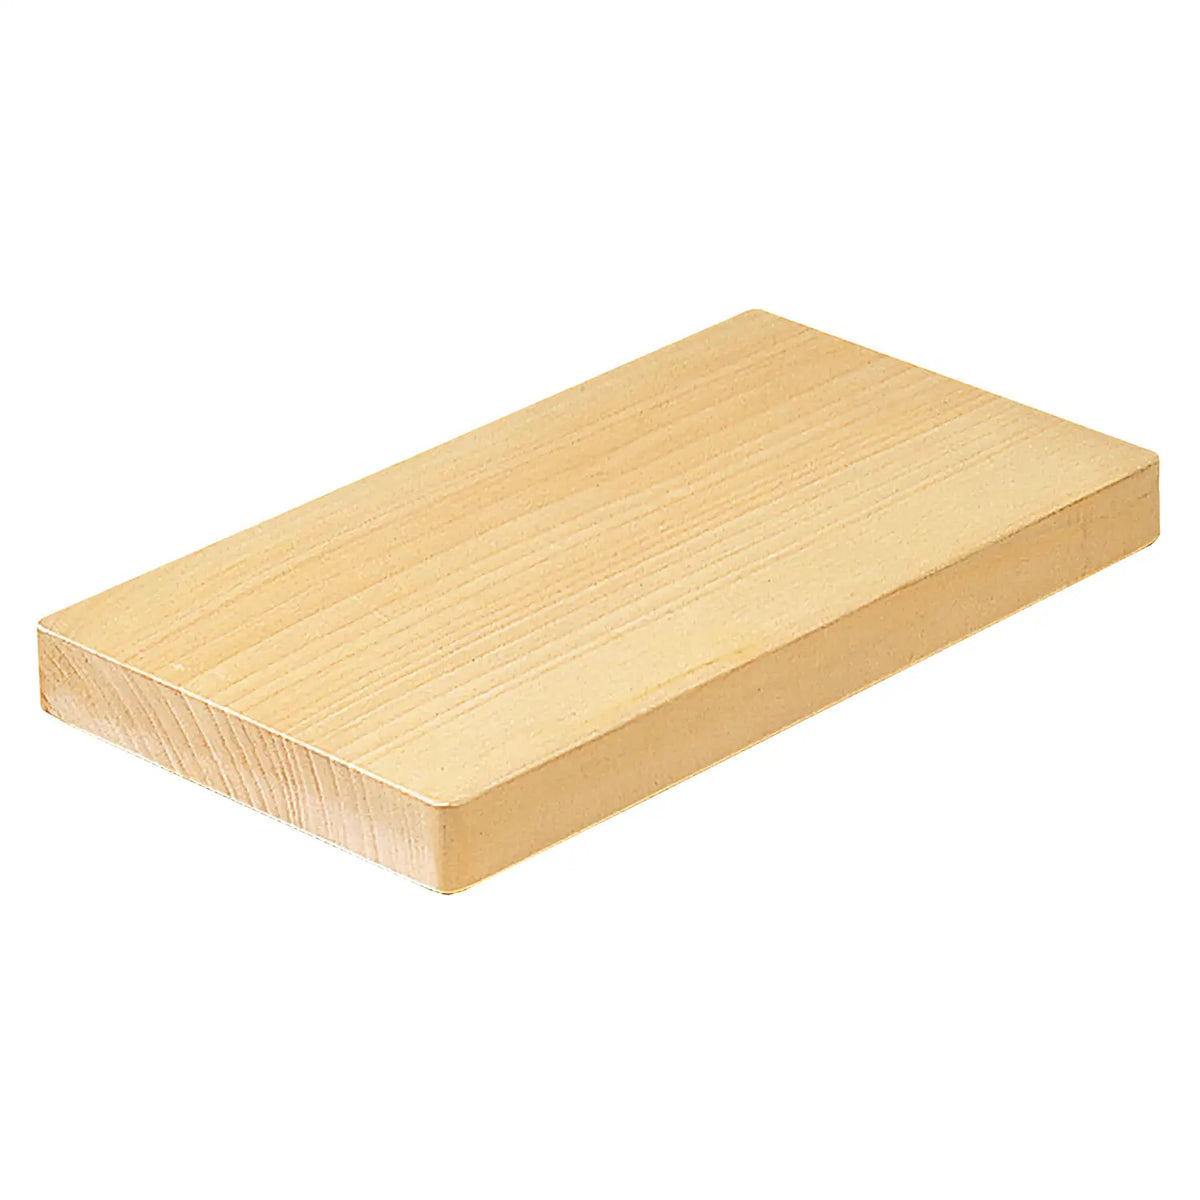 Yamacoh Single Piece Gingko Wooden Cutting Board